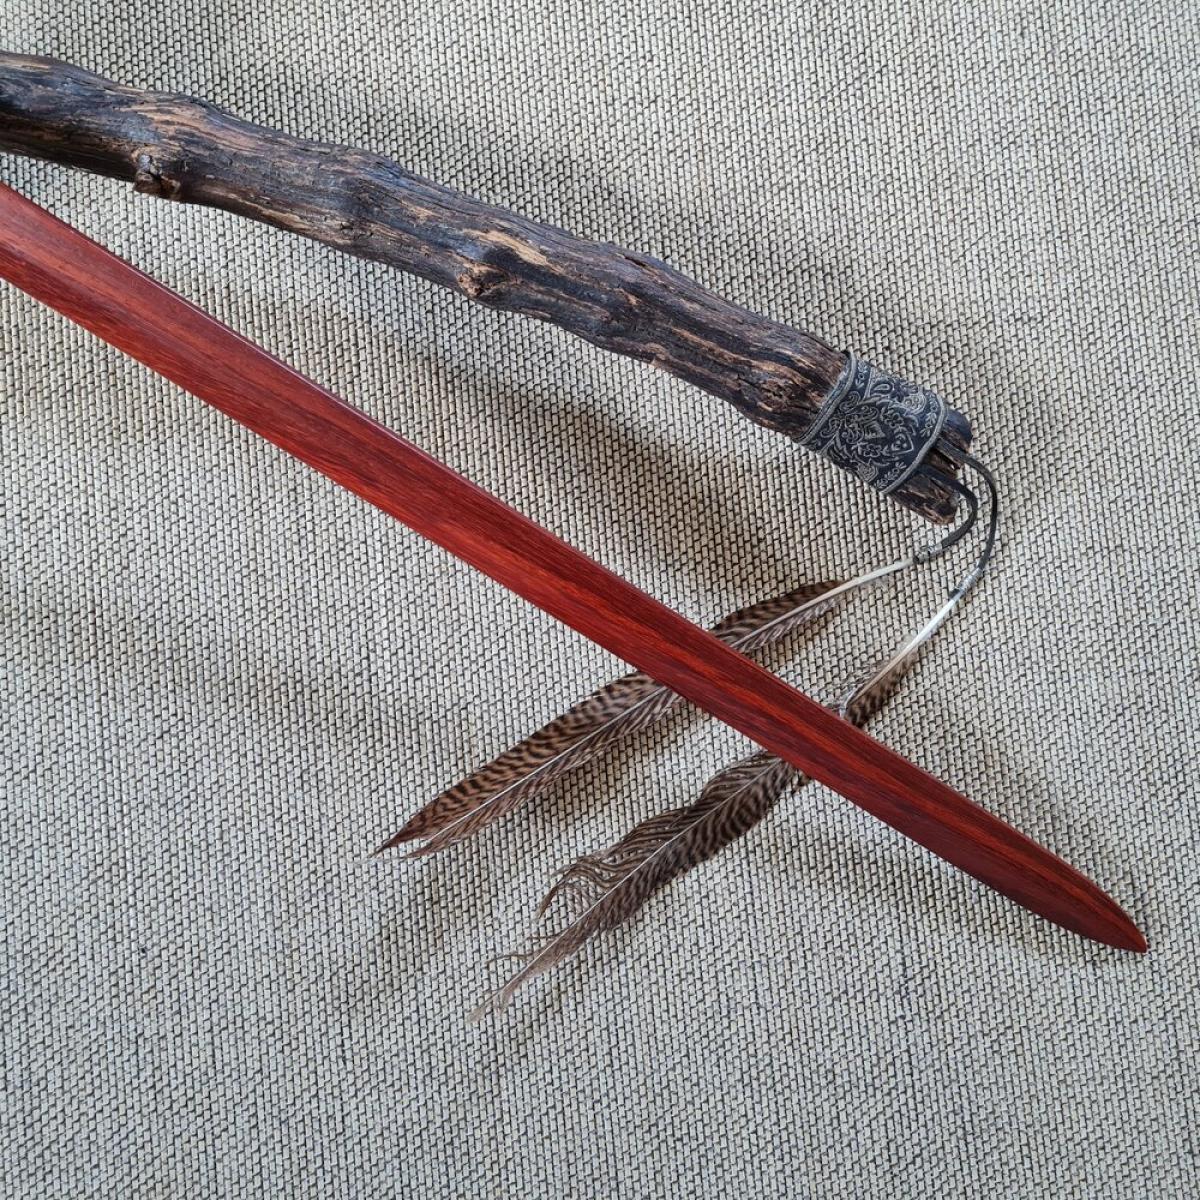 Tai Chi Sword made of Balayong - 65 cm ➽ www.bokken-shop.de ✅ Weapons for Tai Chi ✓ Tai Chi Chuan ✓ Taichi ✓ Your Tai Chi specialist dealer!